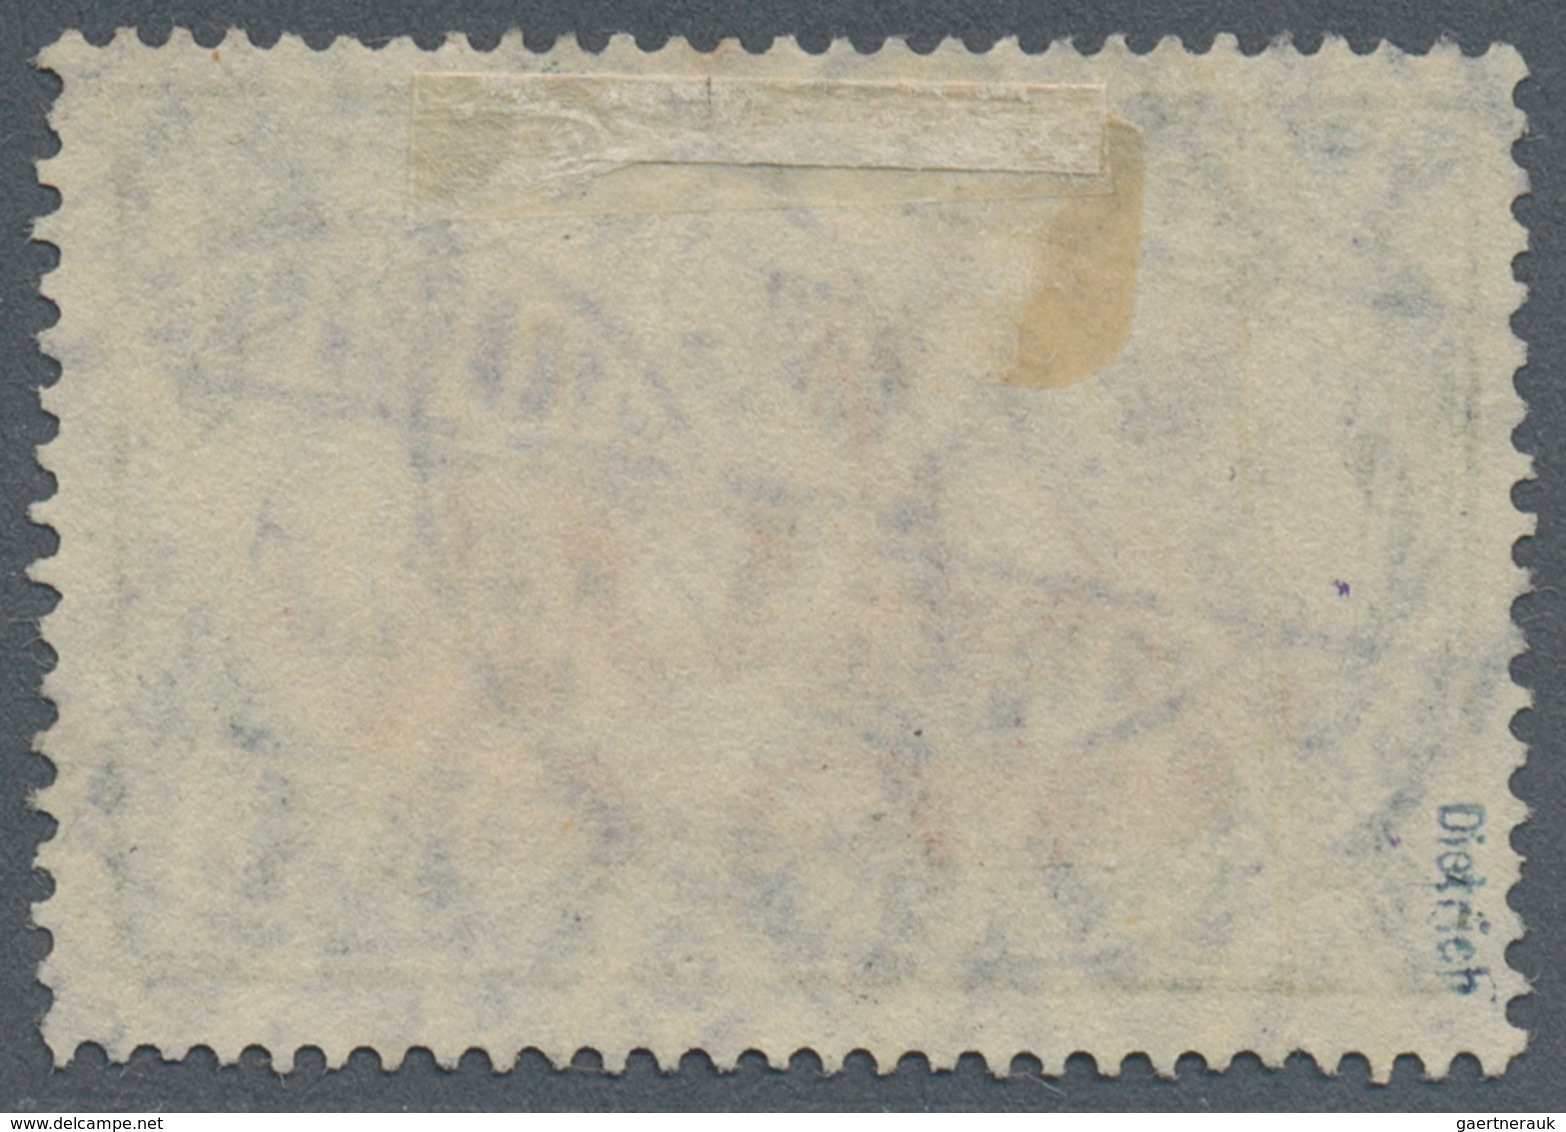 Deutsch-Südwestafrika: 1906, 5 Mark Schiffszeichnung Sauber Gestempelt Und Einwandfrei, Fotokurzbefu - Sud-Ouest Africain Allemand